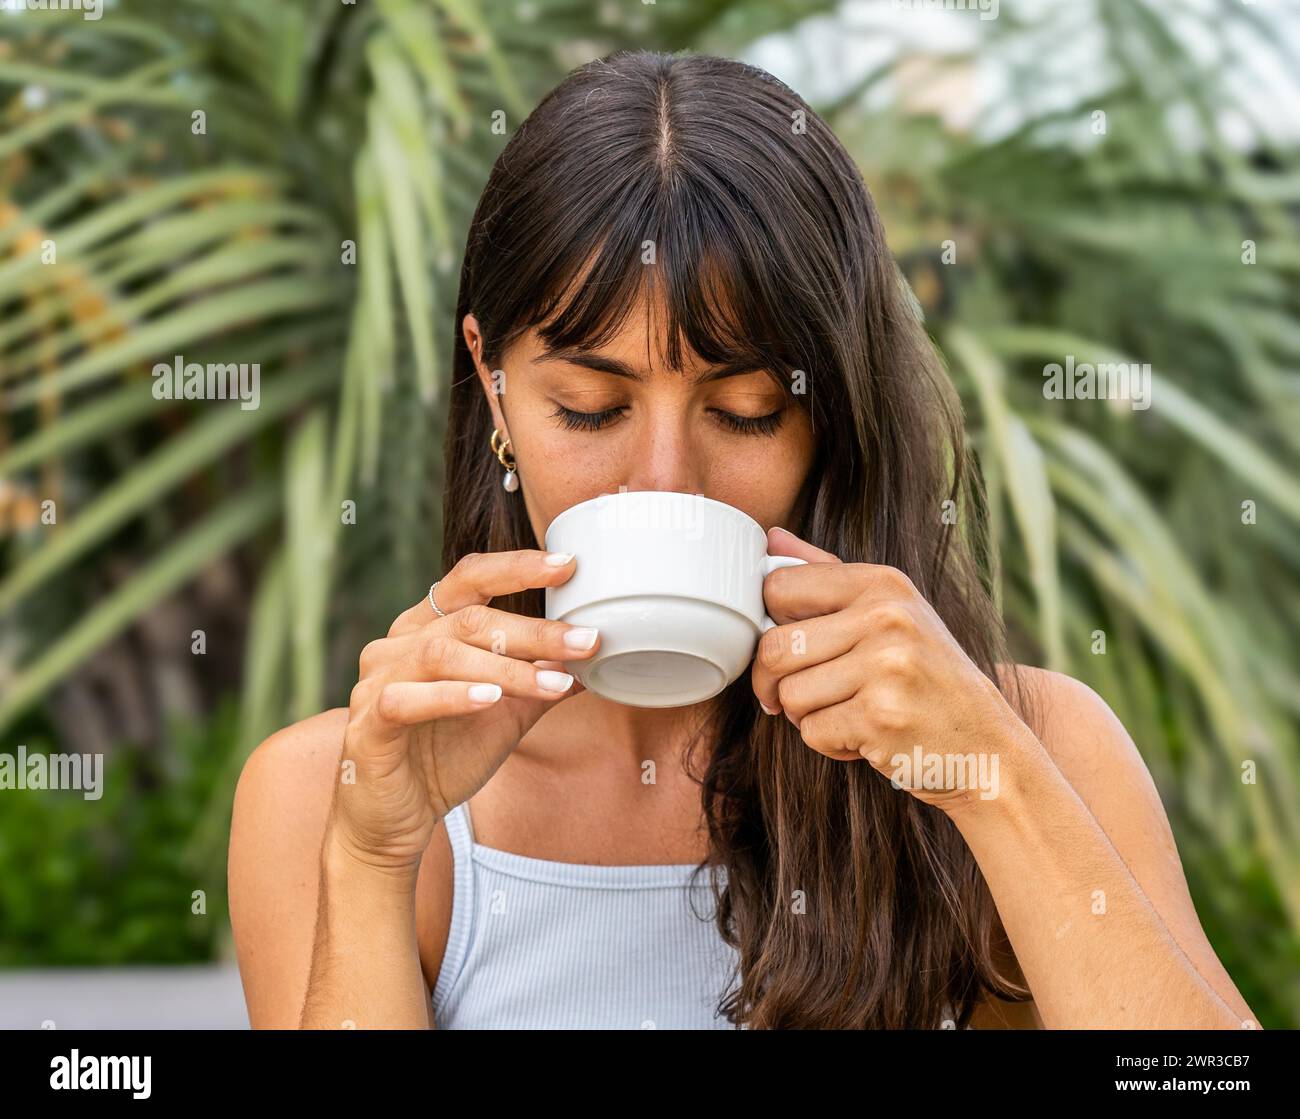 Une femme boit du café dans une tasse blanche les yeux fermés. Elle porte un débardeur et a ses cheveux tirés en arrière Banque D'Images